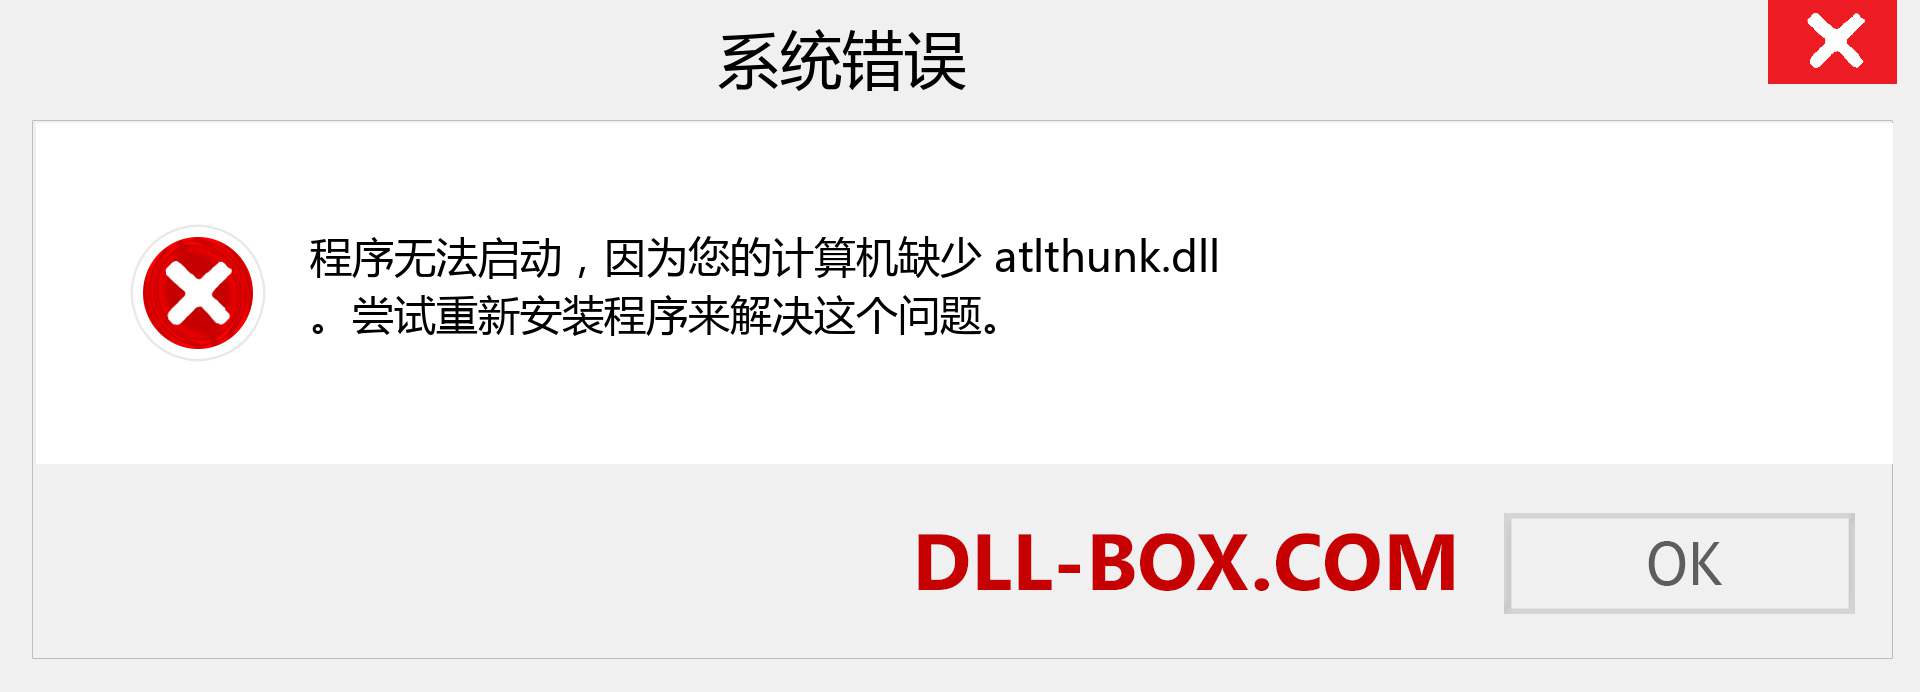 atlthunk.dll 文件丢失？。 适用于 Windows 7、8、10 的下载 - 修复 Windows、照片、图像上的 atlthunk dll 丢失错误